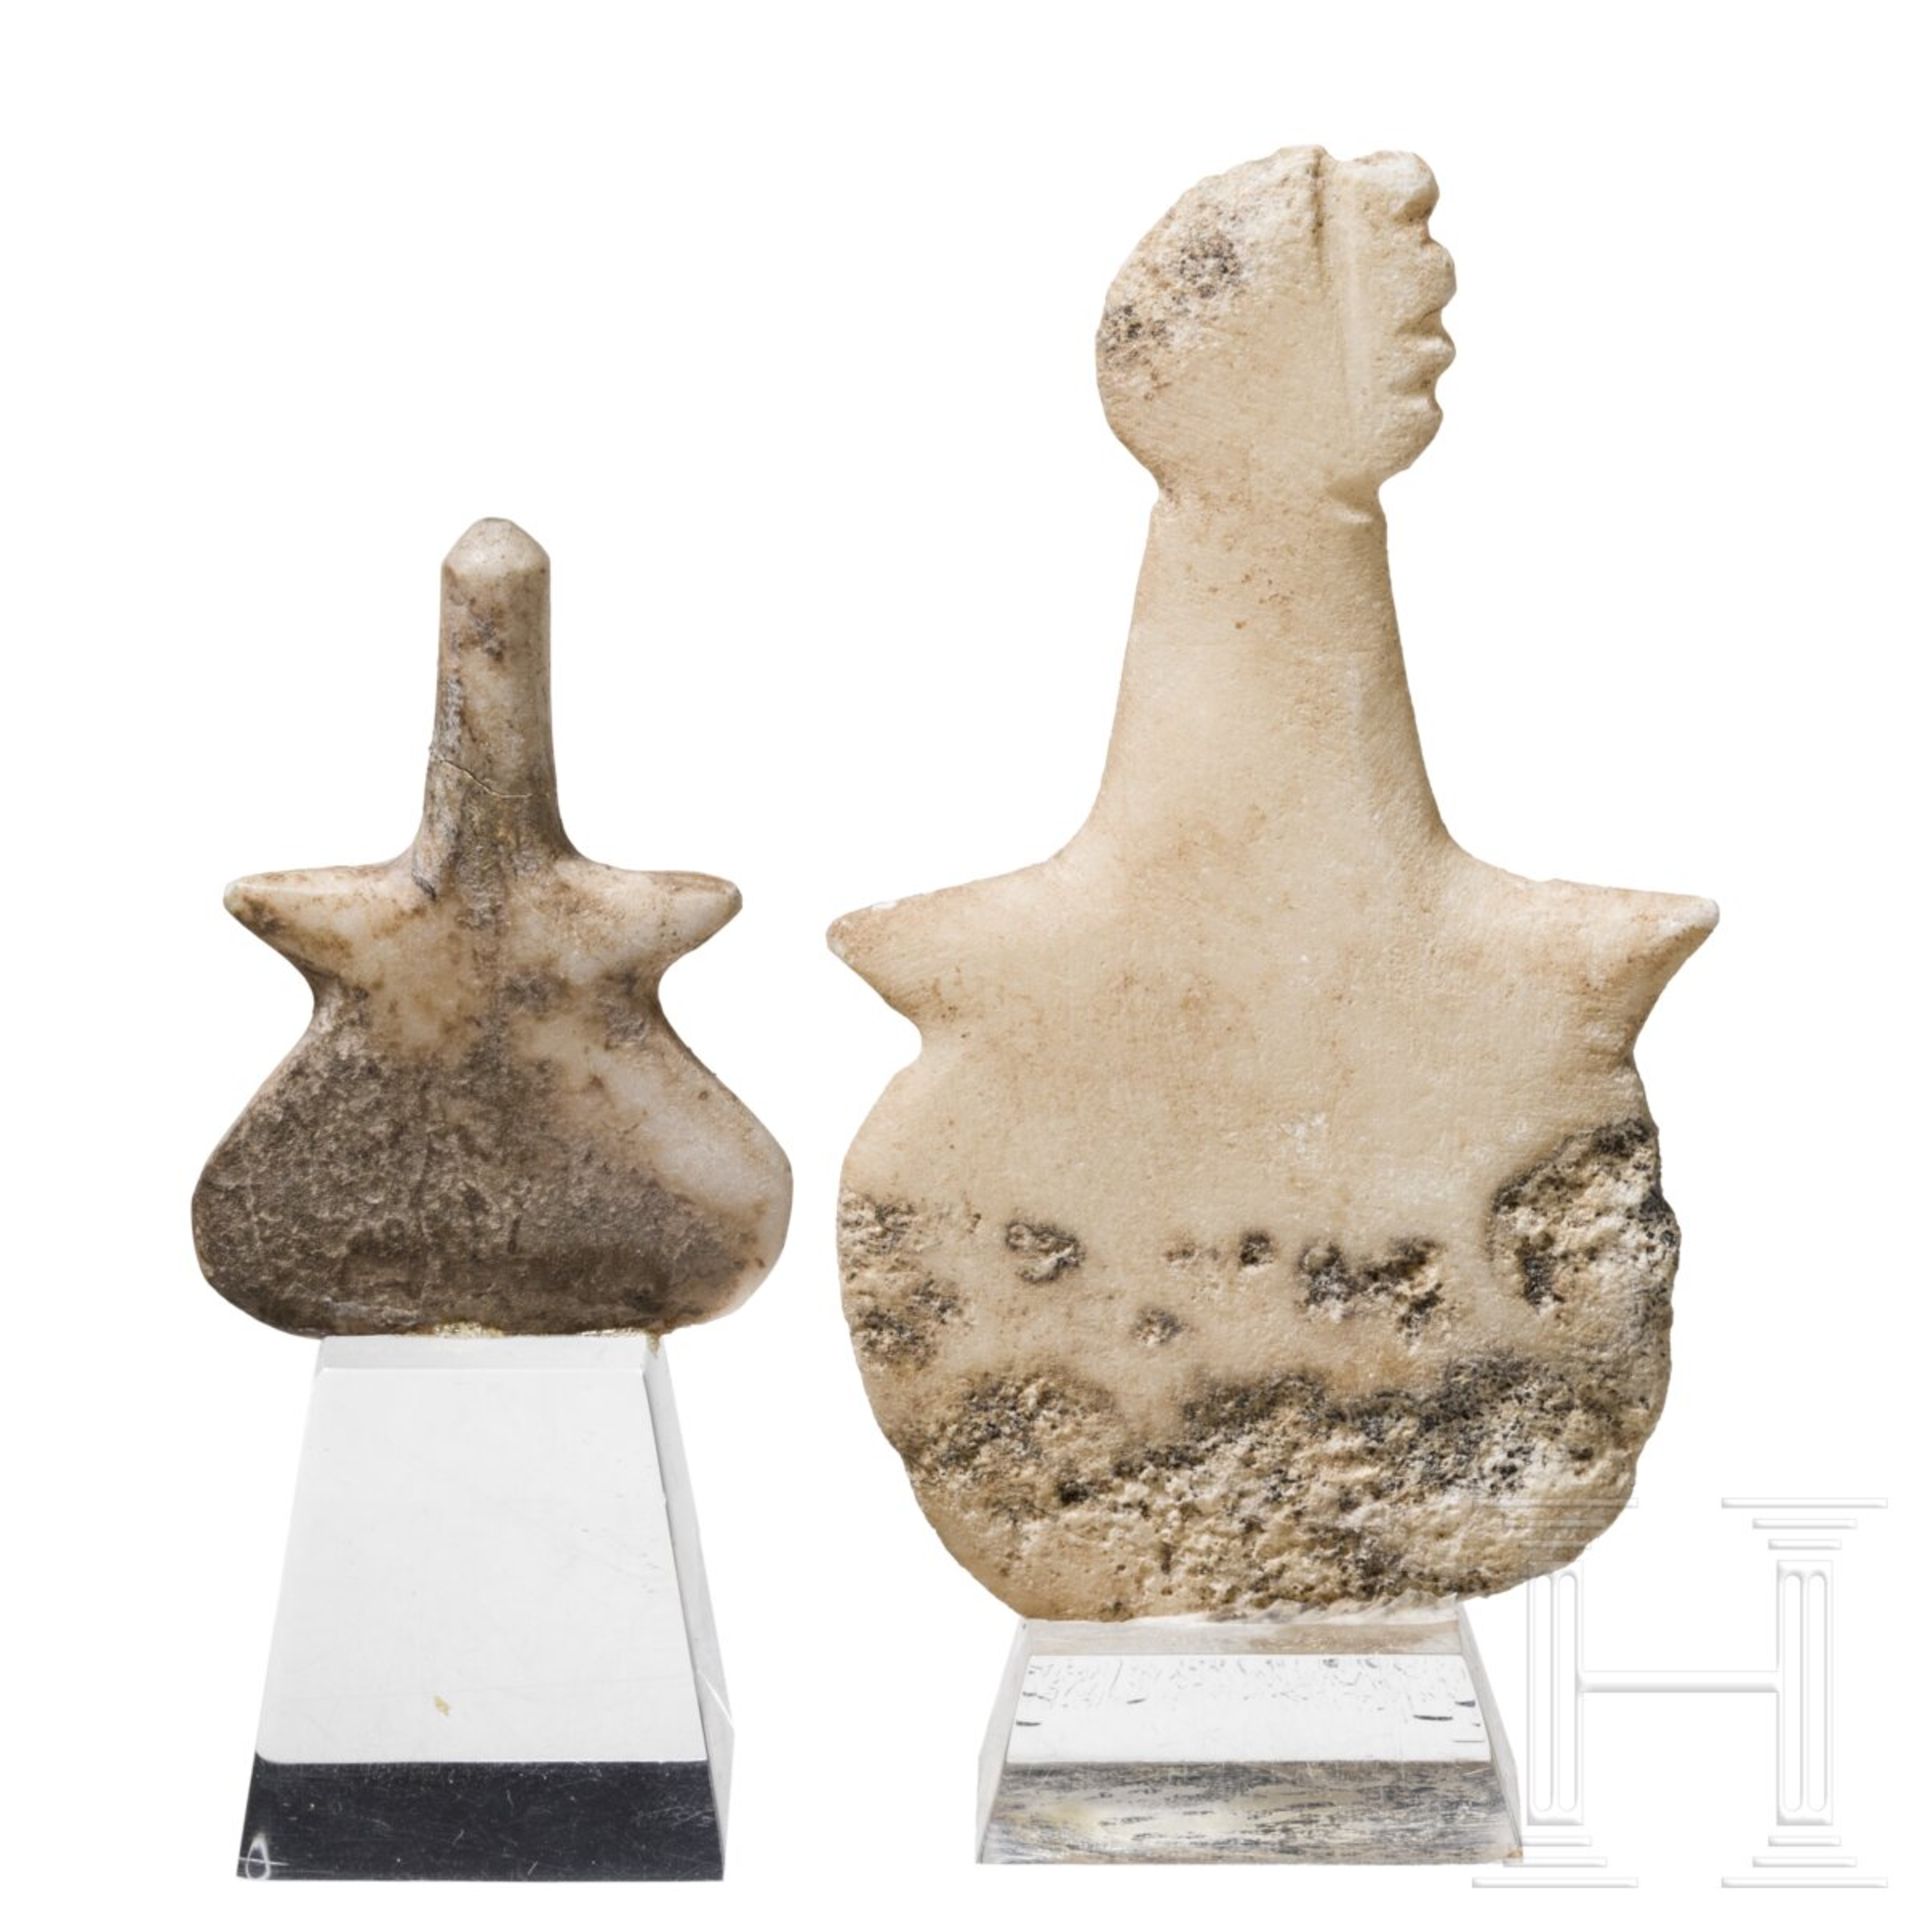 Zwei Marmoridole vom Typ Beycesultan und Kusura-Beycesultan, Anatolien, ca. 2700 - 2100 v. Chr.